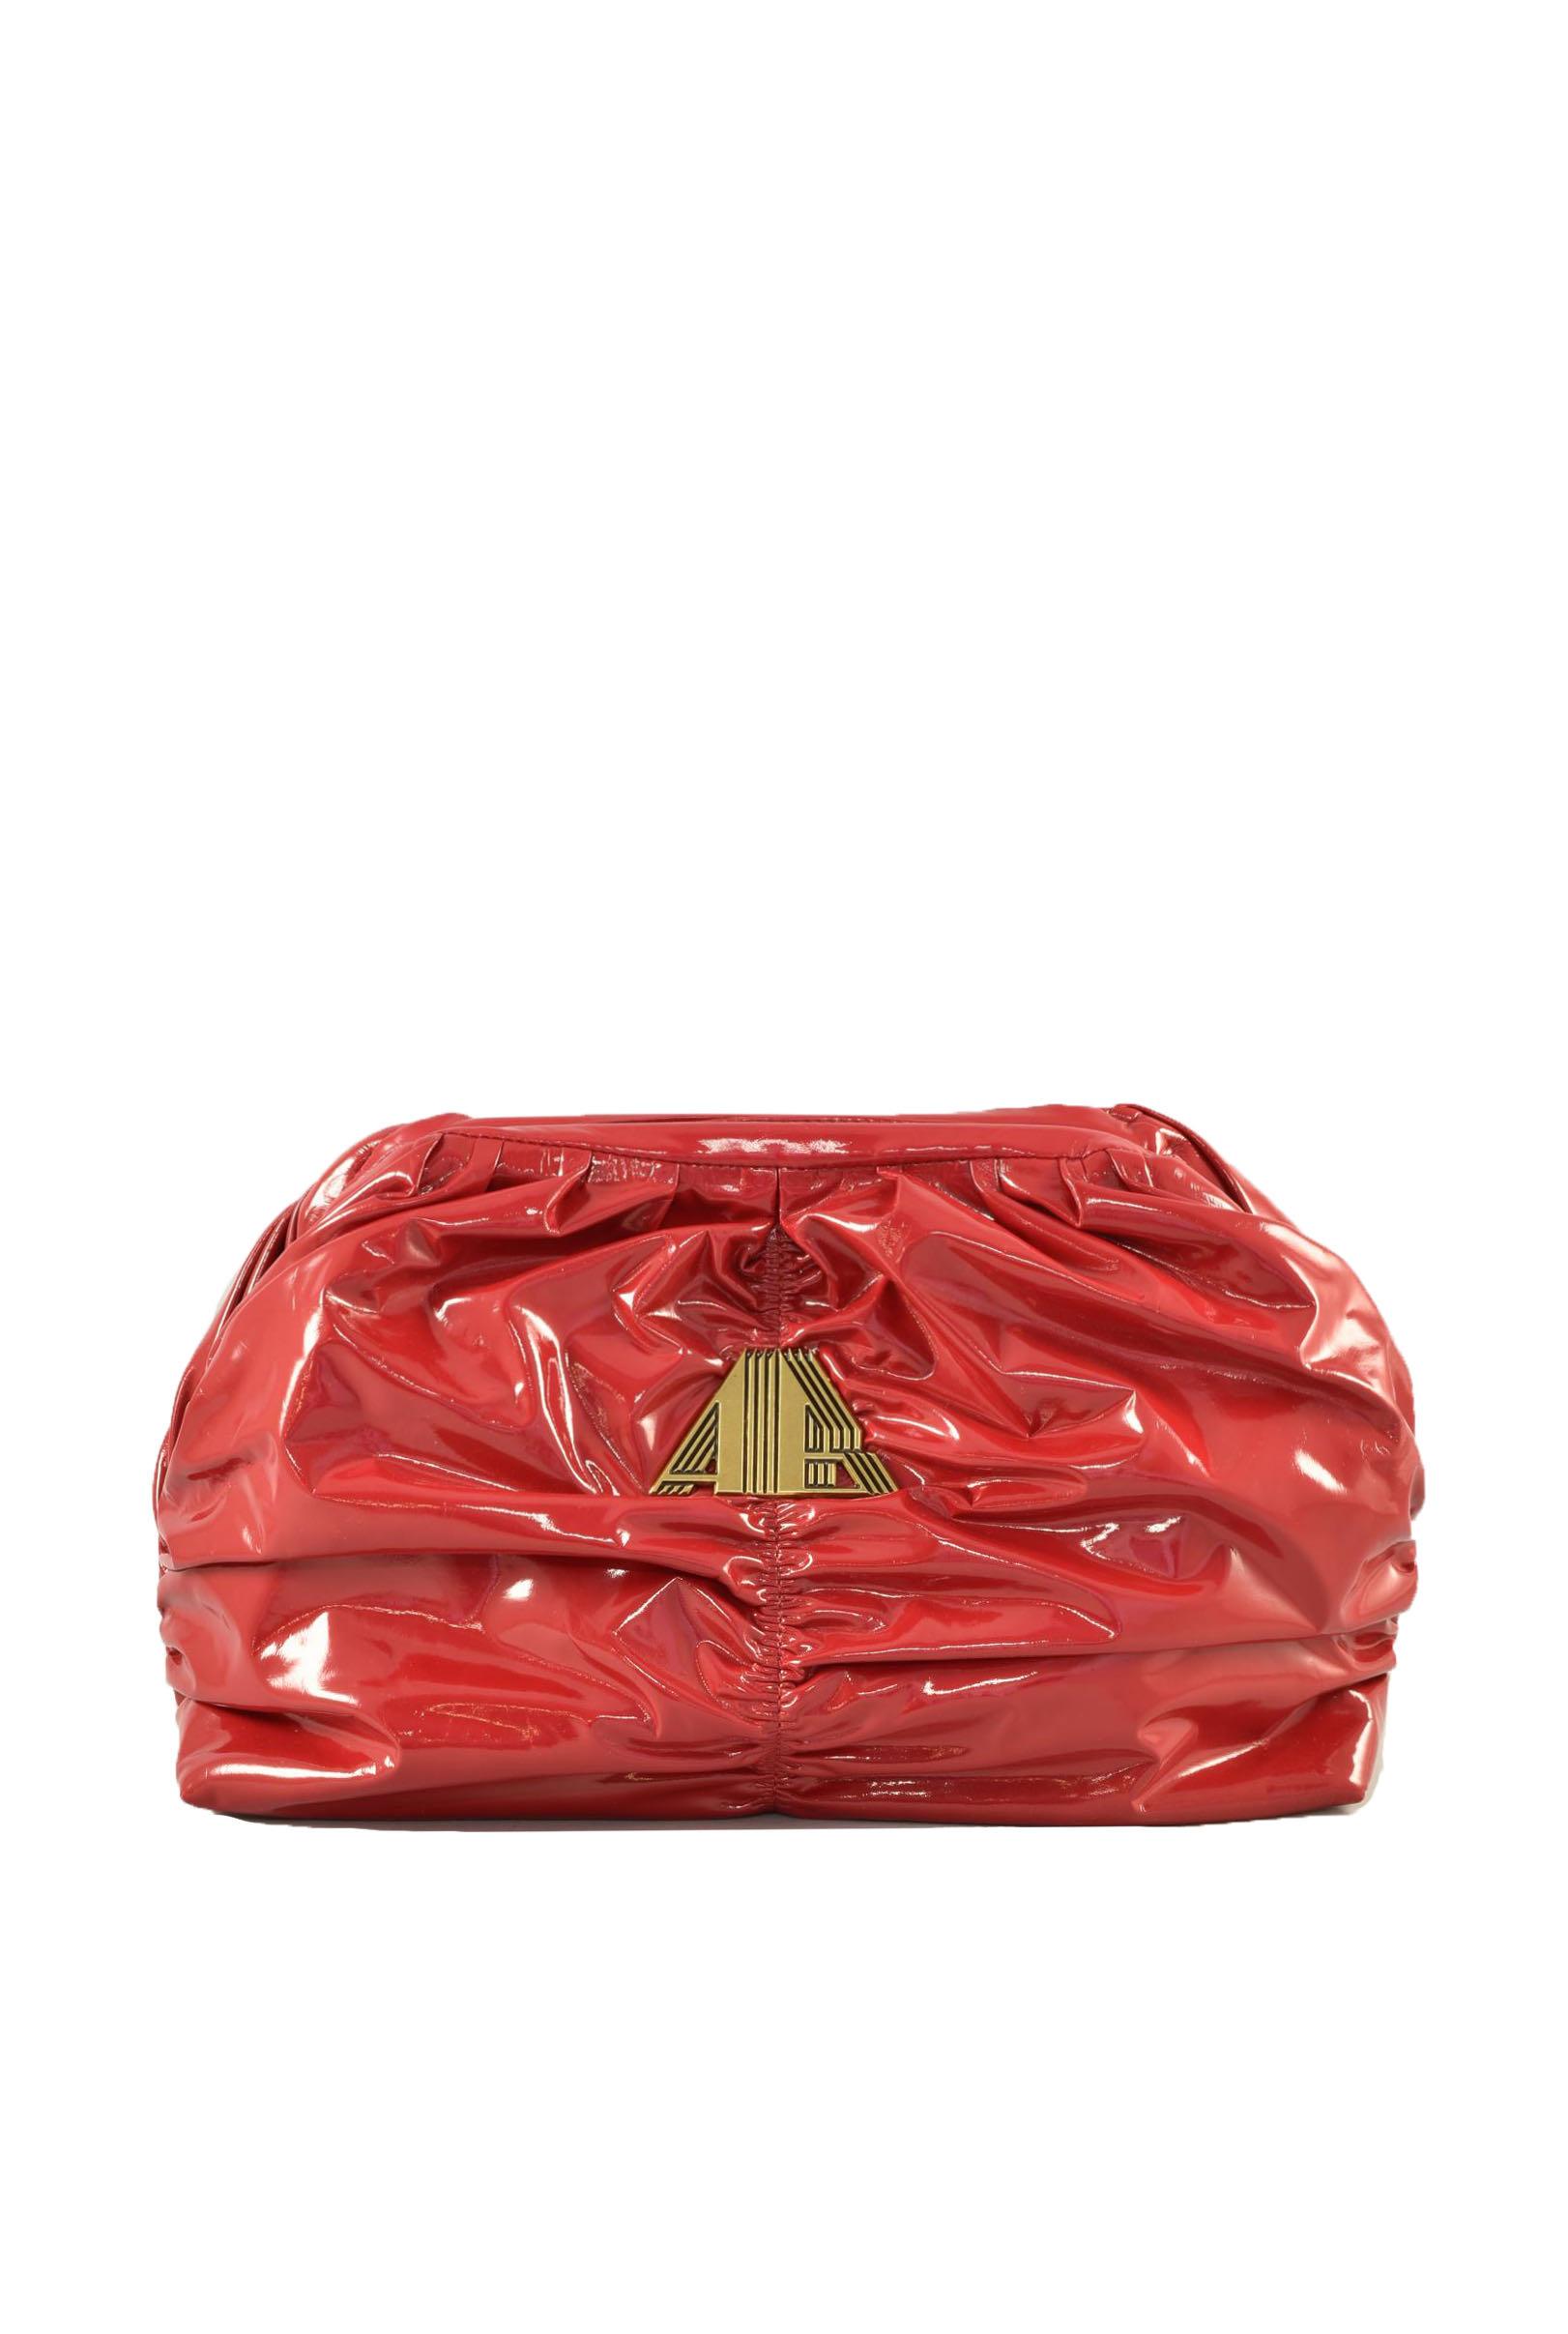 Aniye By Women's Strawberry Red Handbag